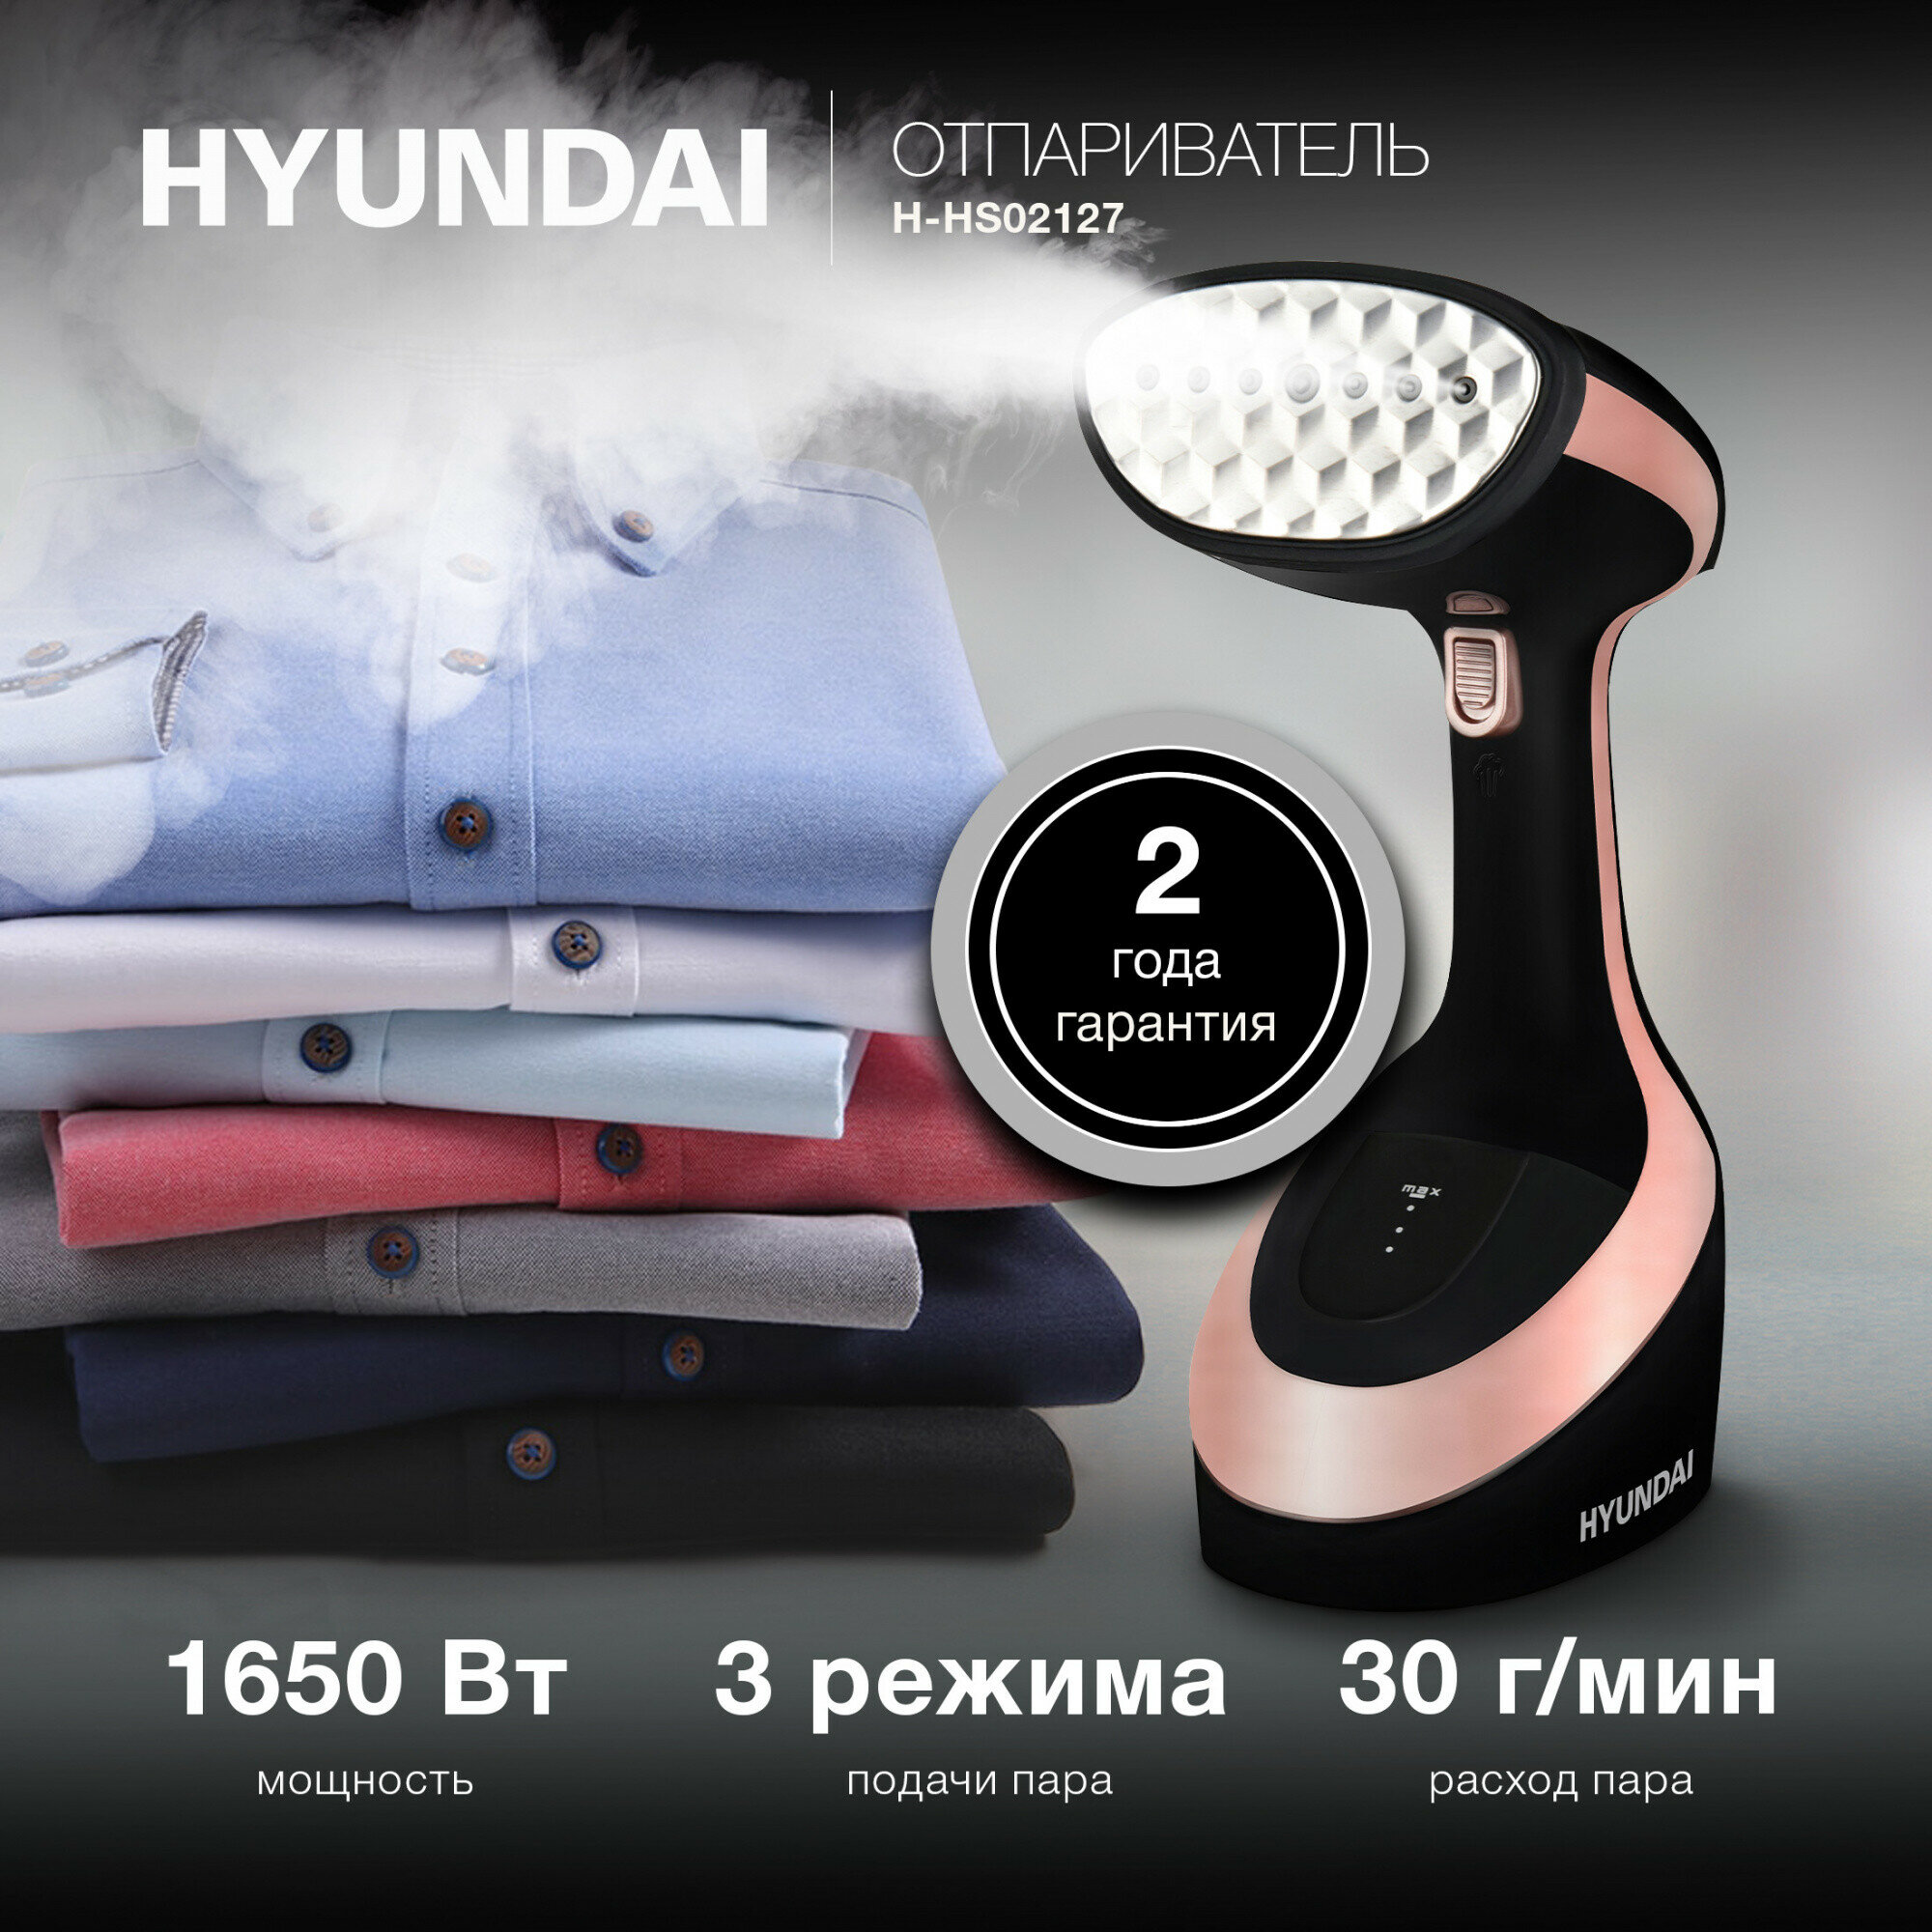 Отпариватель Hyundai H-HS02127 черный/розовый